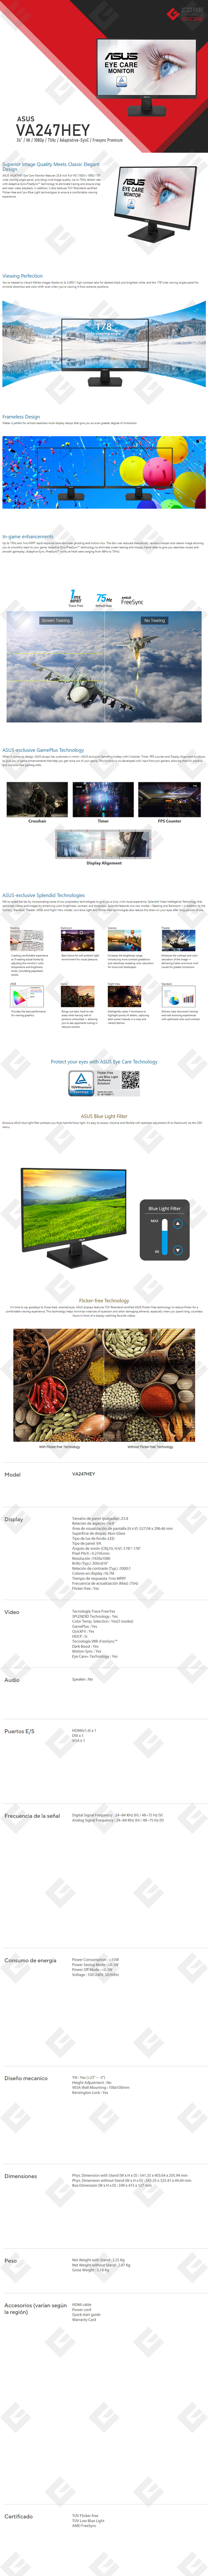 Monitor Asus VA247HEY 23.8", 1920 x 1080, Full HD, 1Ms, 75Hz, VA, Adaptative-Sync, FreeSync Premium, HDMI, DVI. VGA